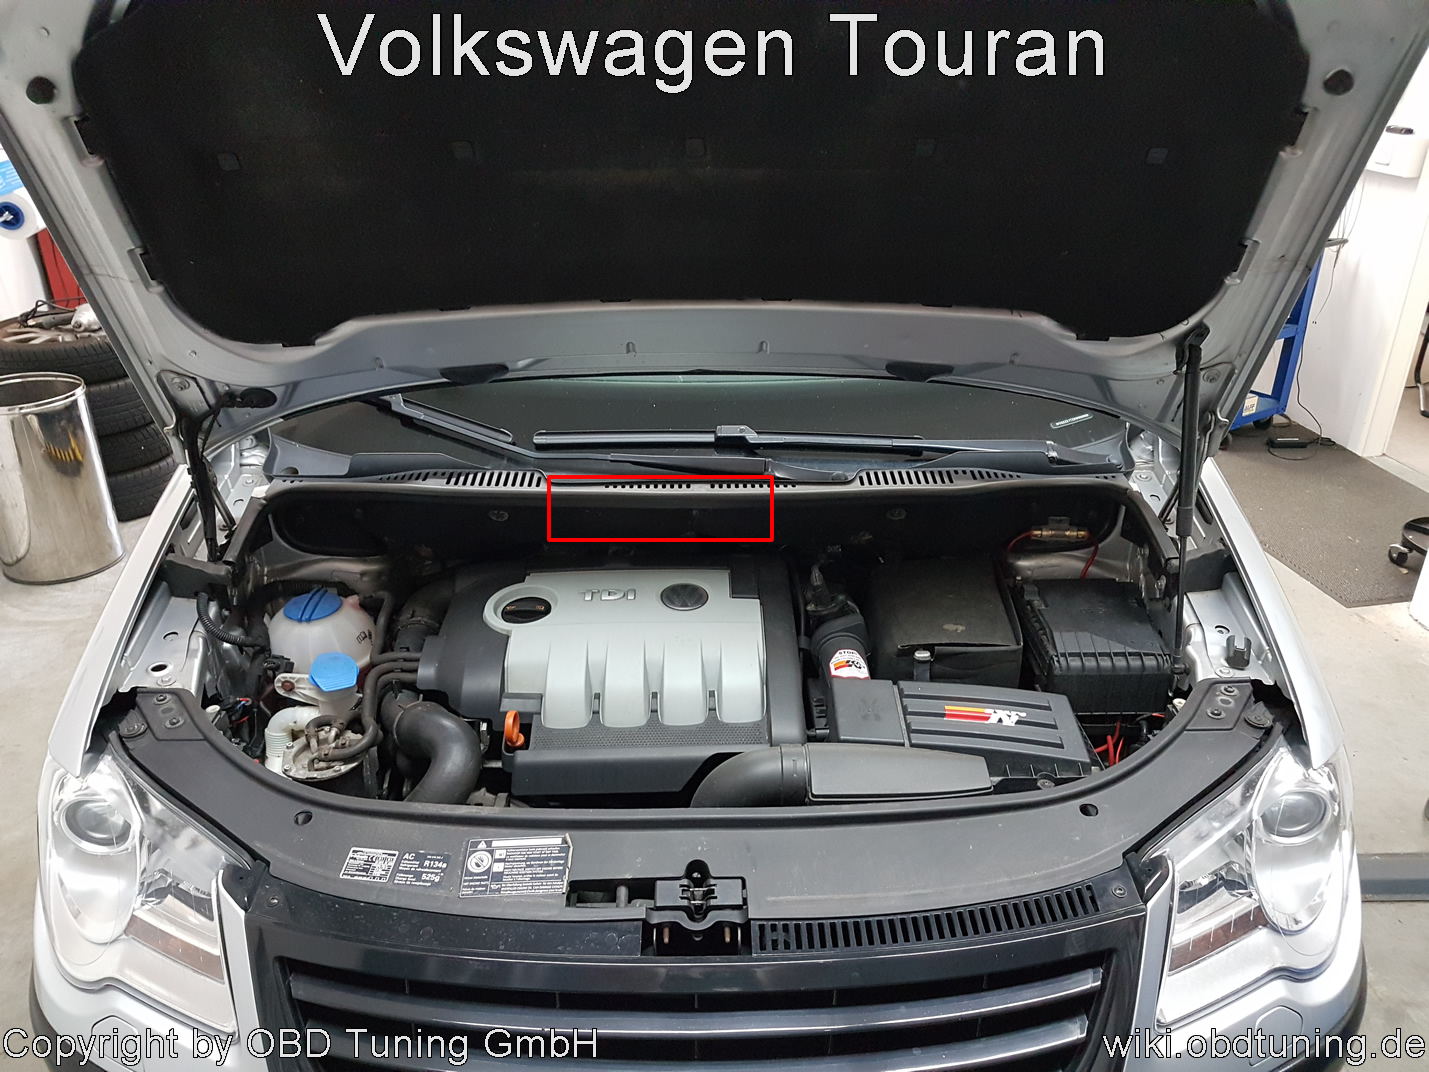 Volkswagen Touran ECU.jpg